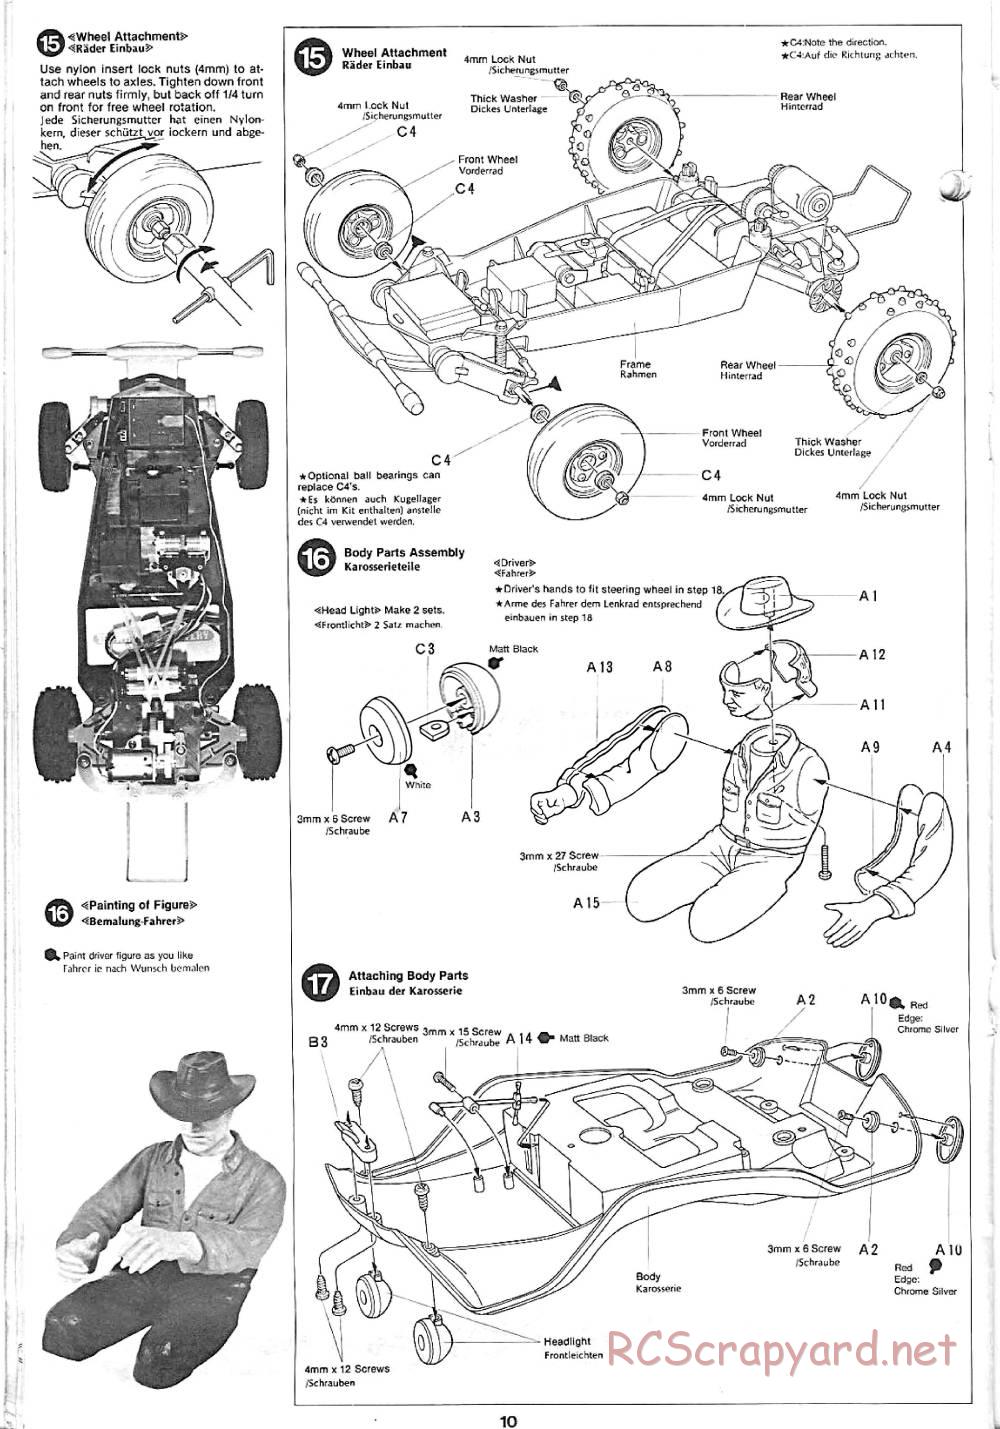 Tamiya - Sand Rover - 58024 - Manual - Page 10